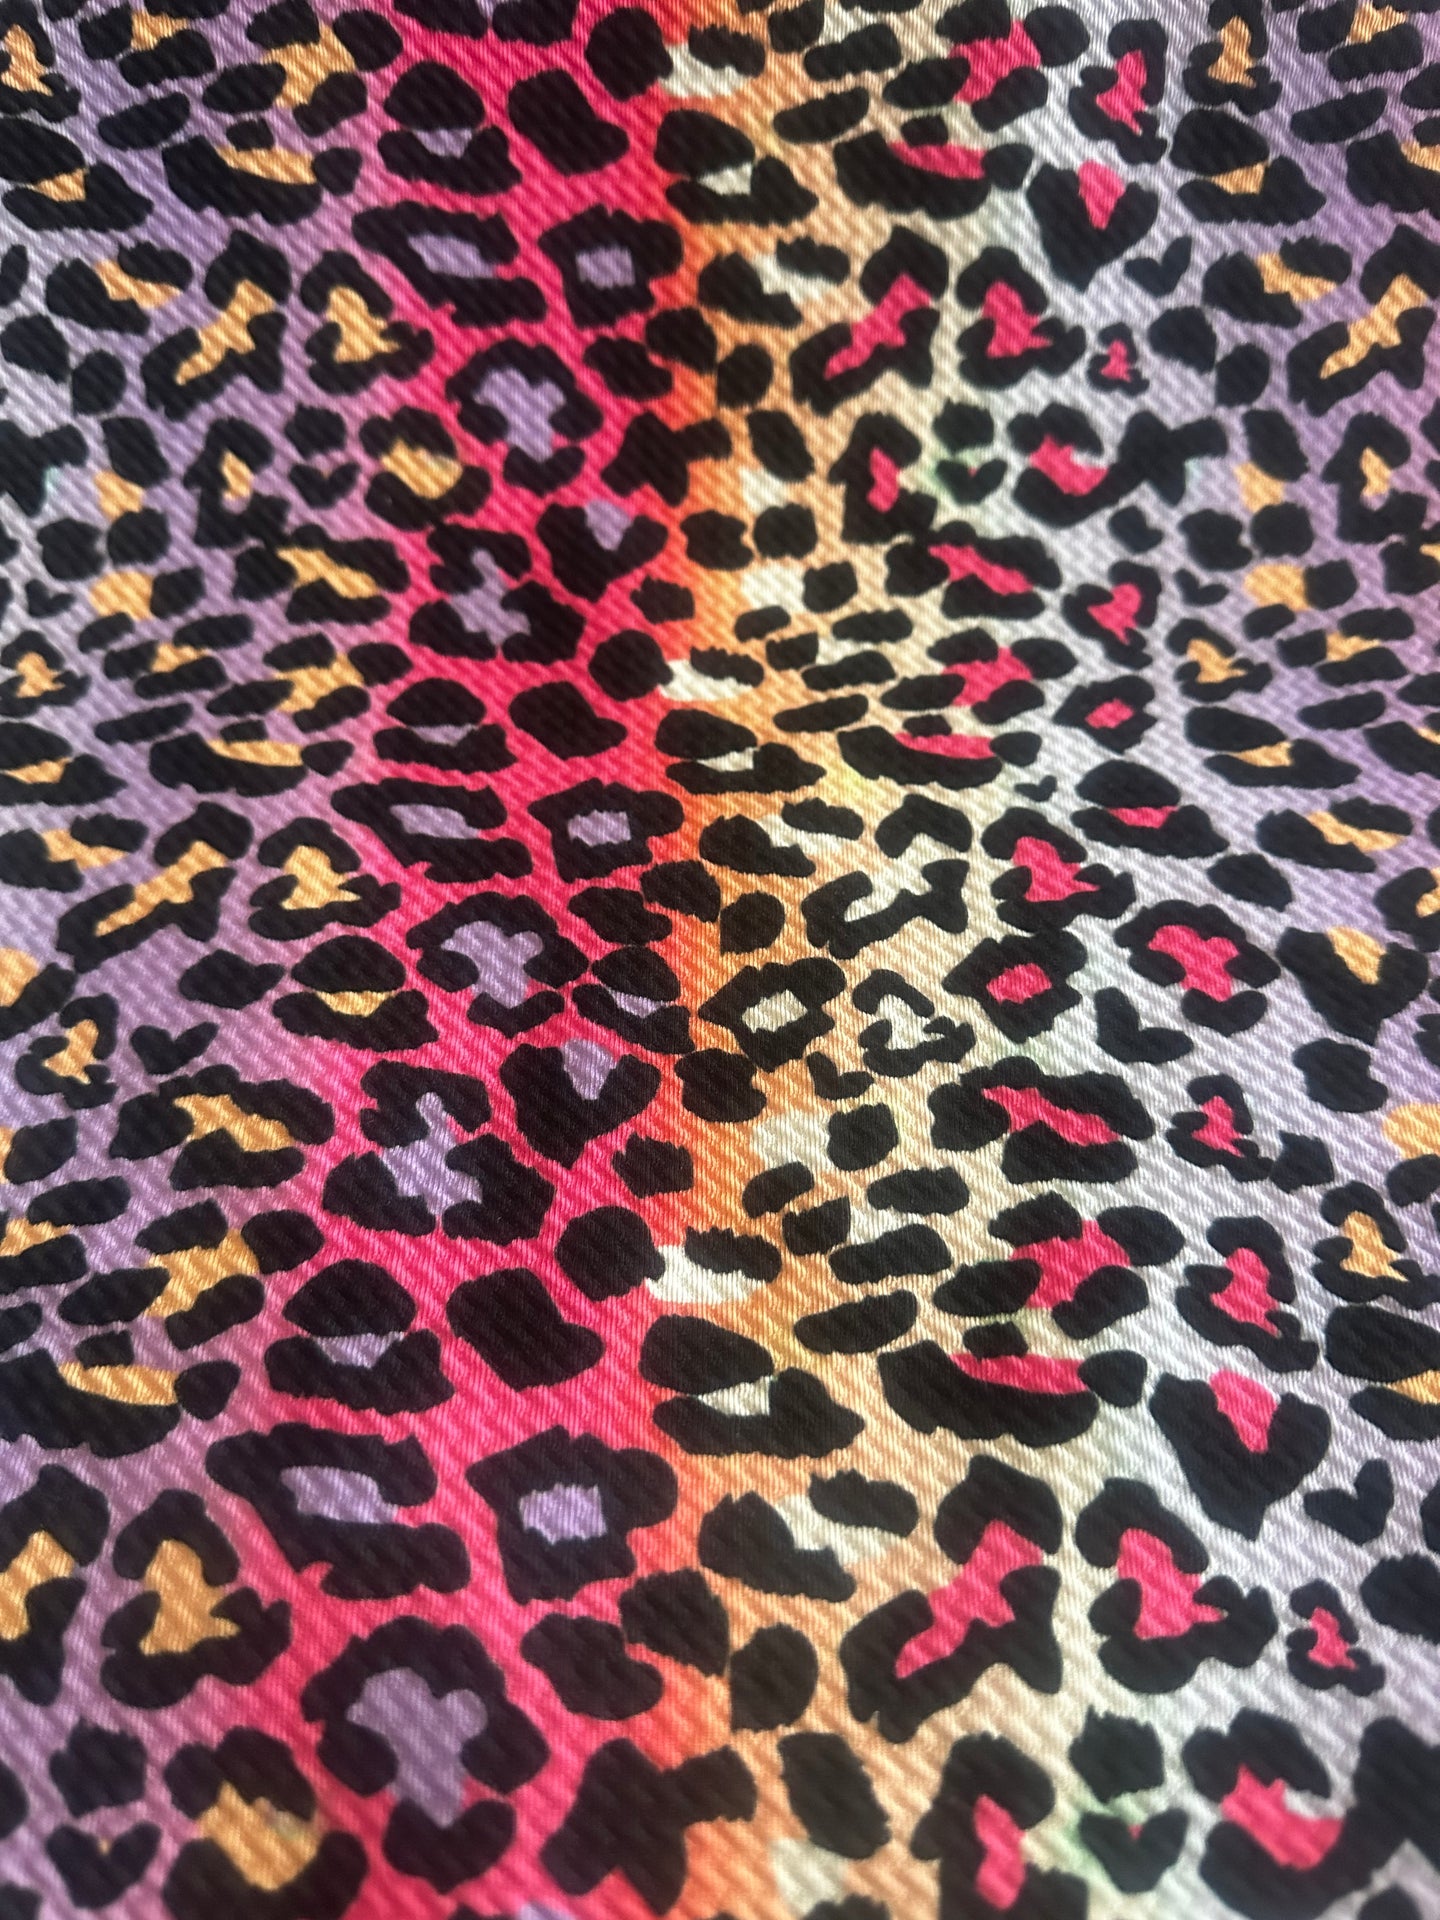 Ombré Rainbow Cheetah